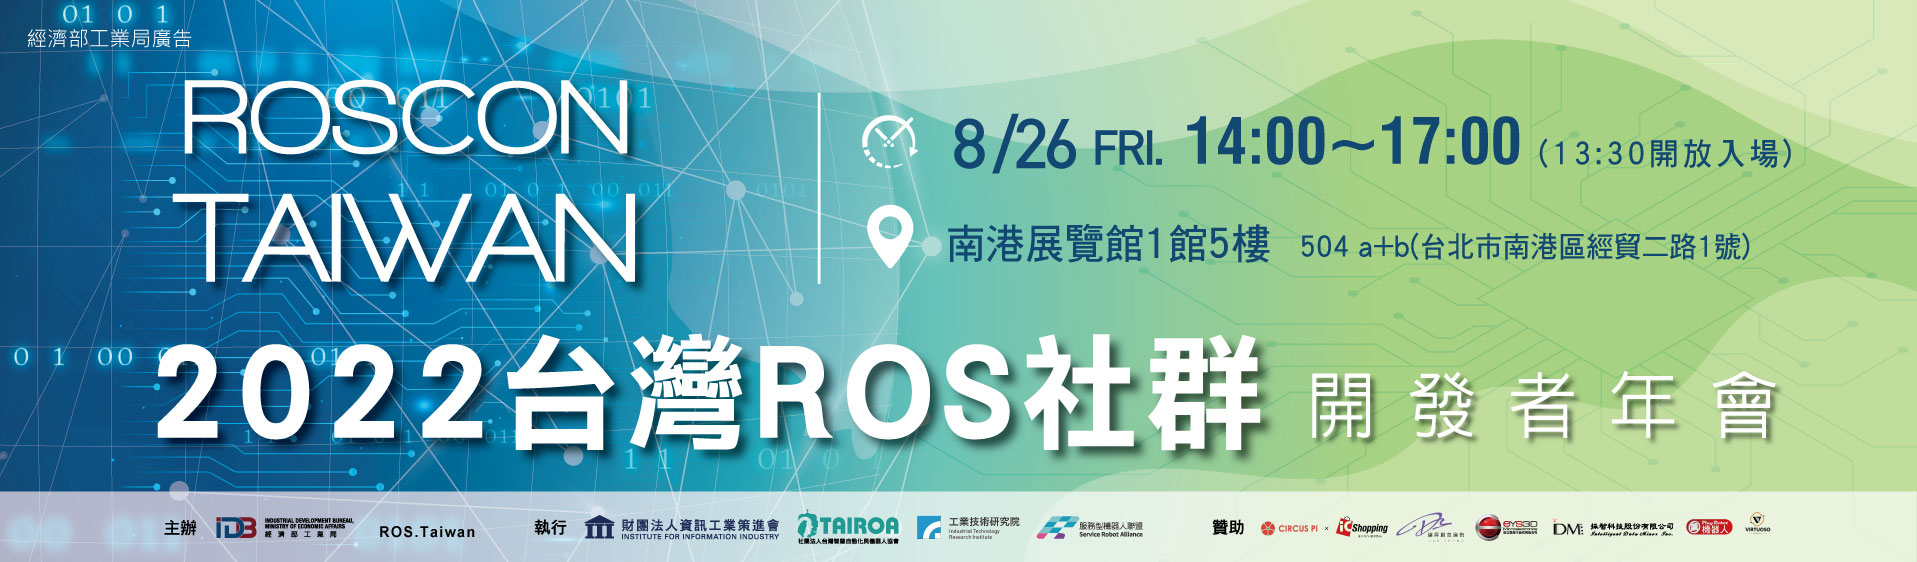 臺灣最主要的開放社群-2022 台灣ROS社群開發者年會-免費開放報名!